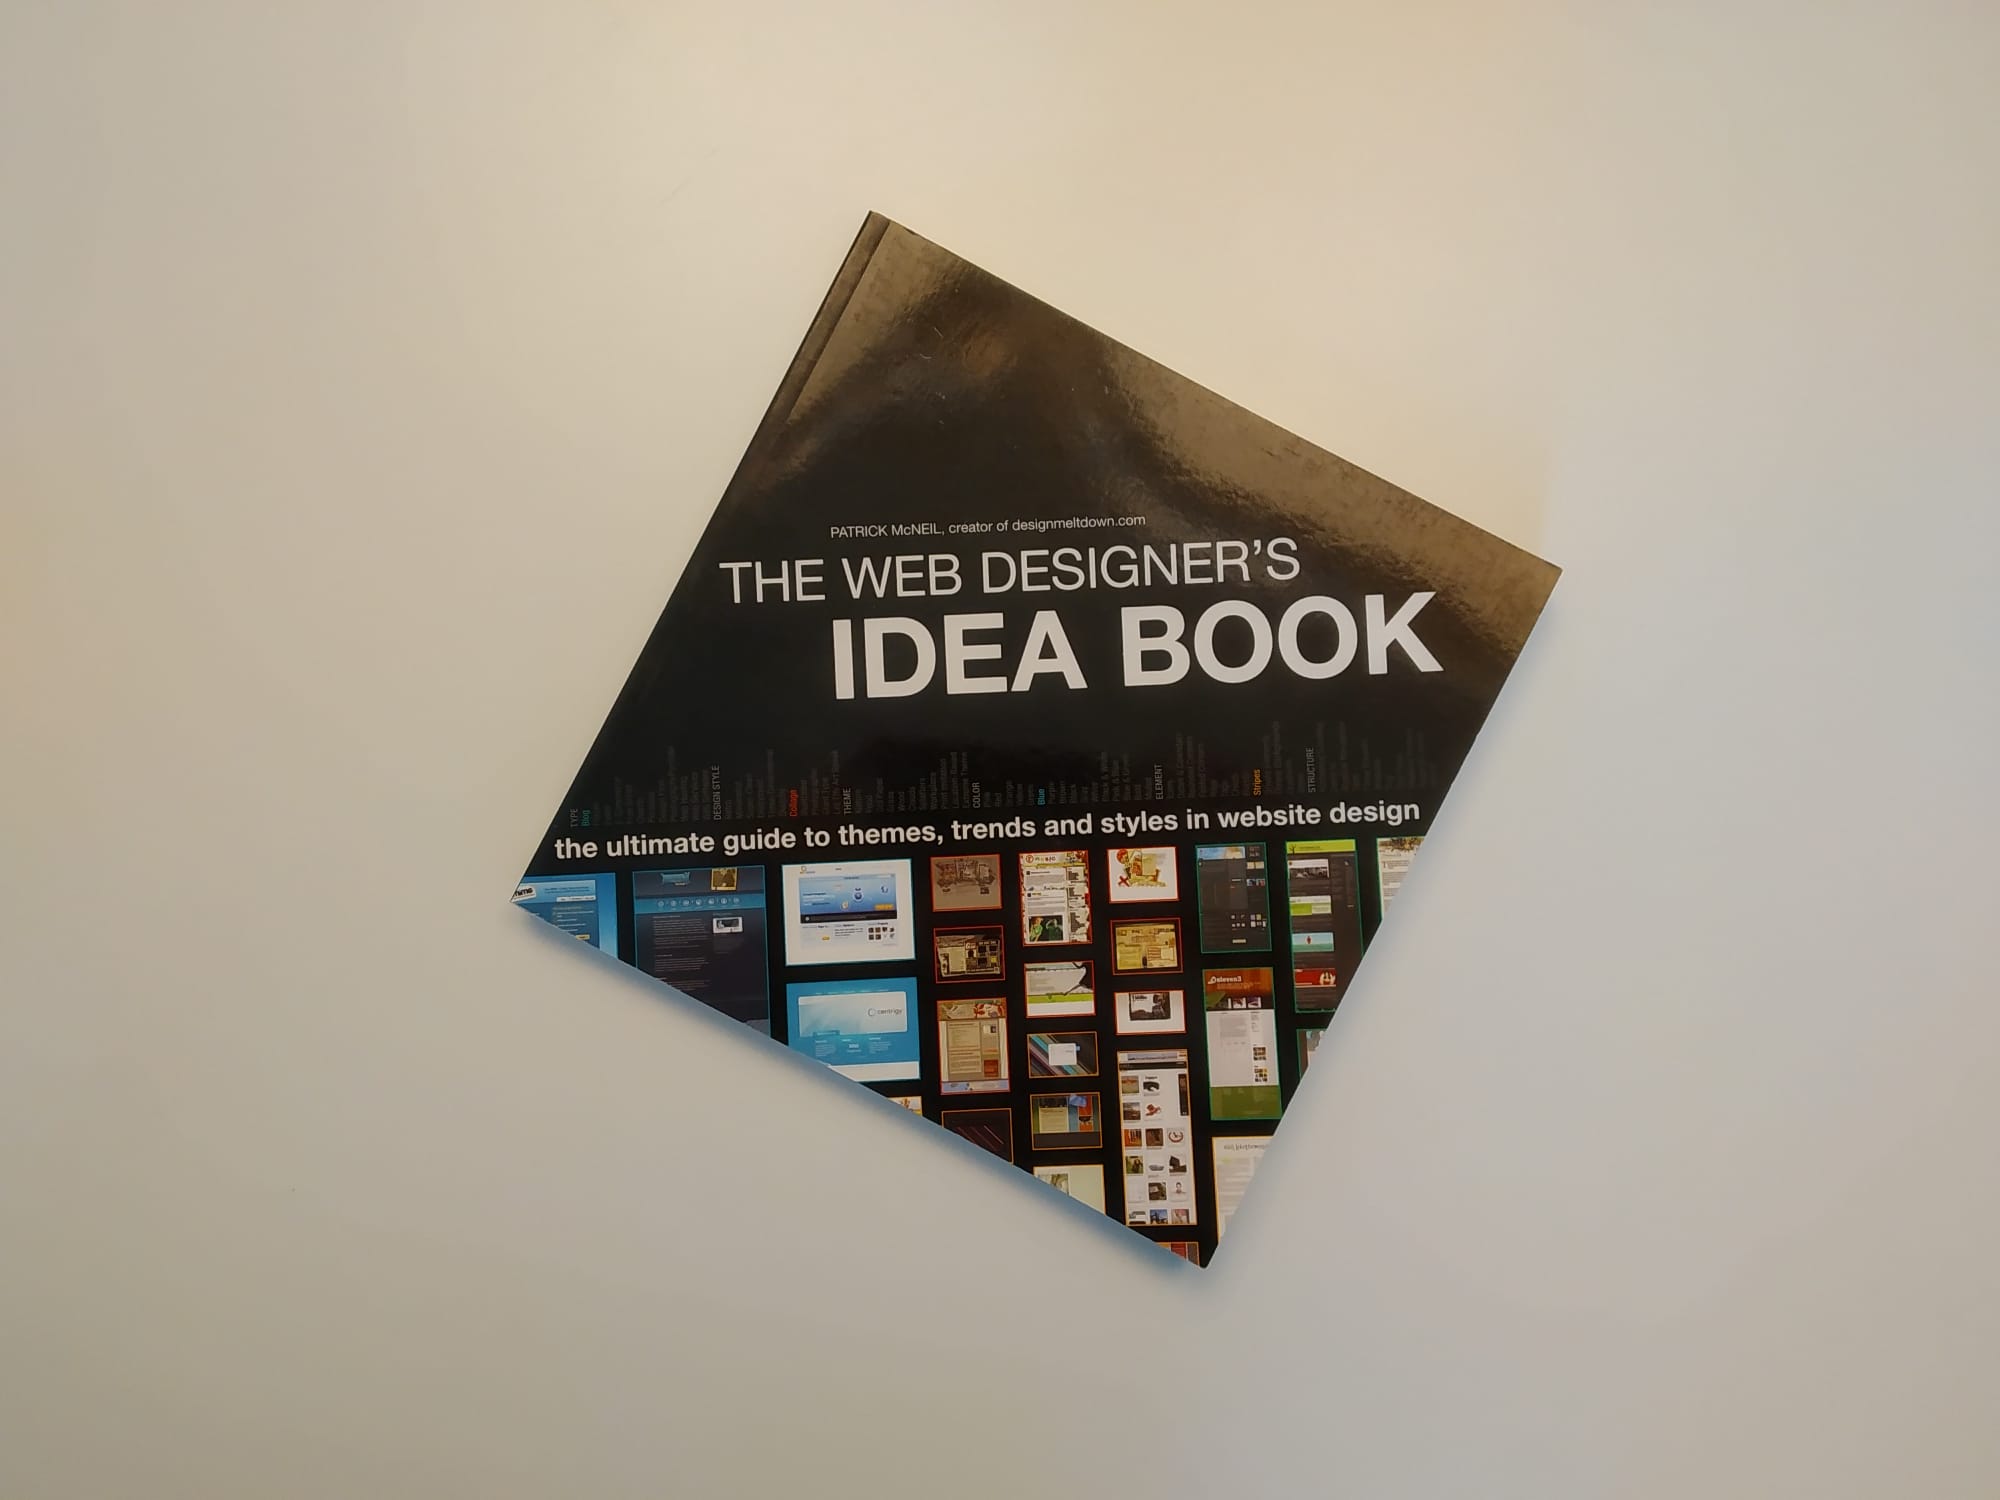 The Web Designer's Idea Book